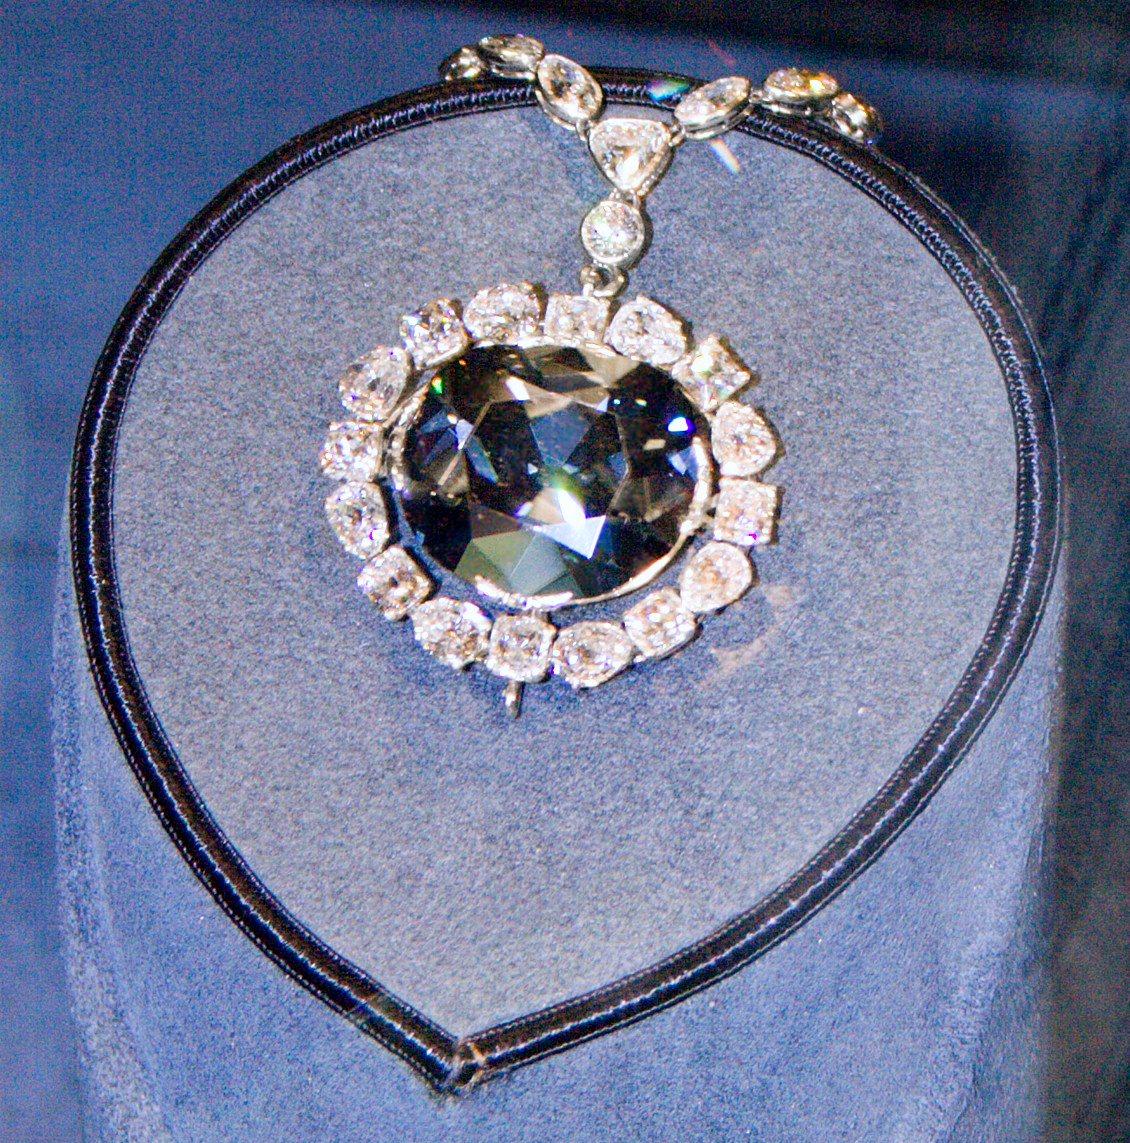 Resultado de imagen para Fotos del Diamante Hope, junto con otras joyas de la corona britÃ¡nica